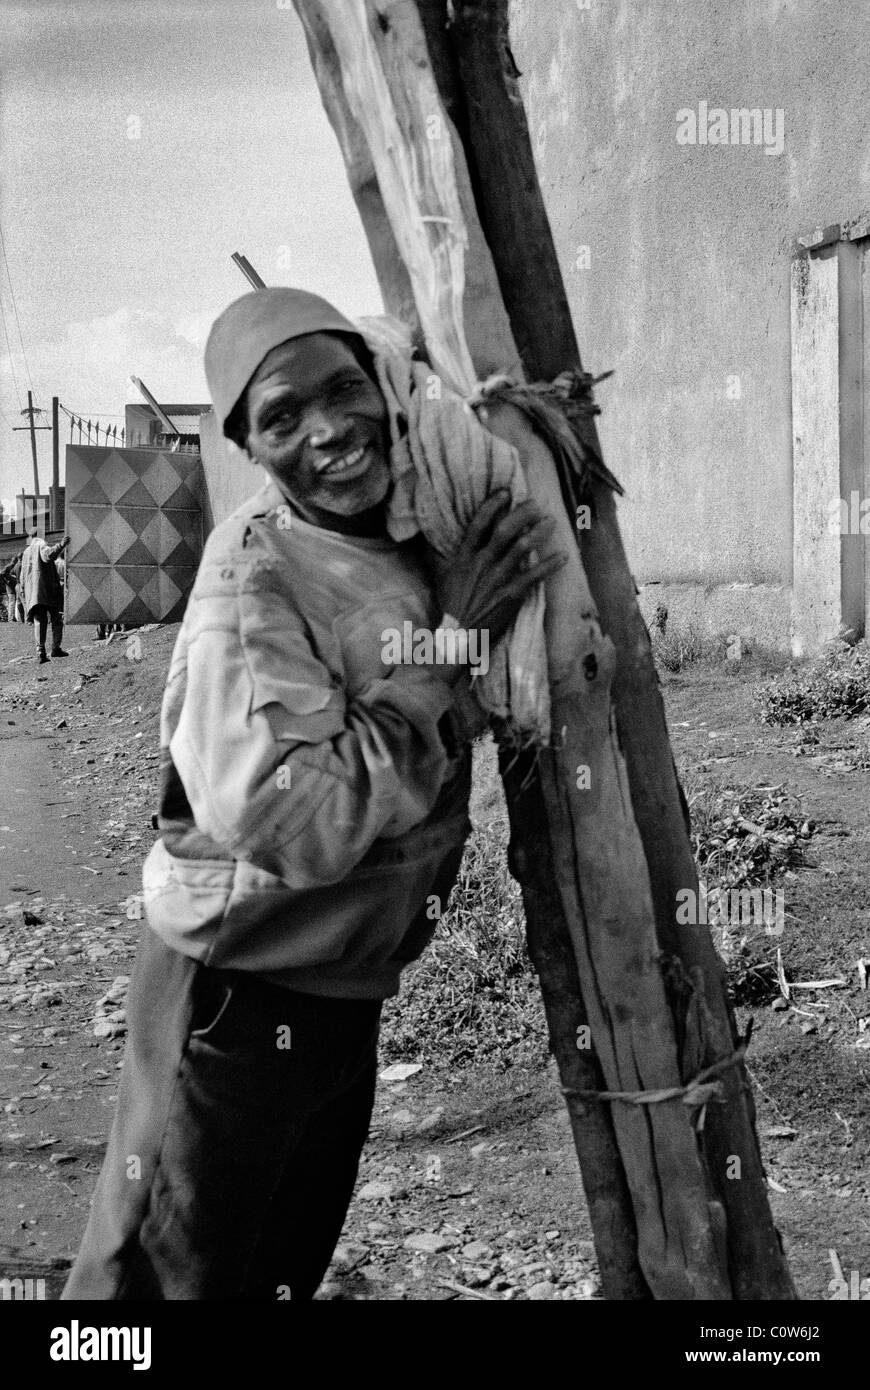 Burundian man carrying wood to the market, Ngozi, Burundi Stock Photo